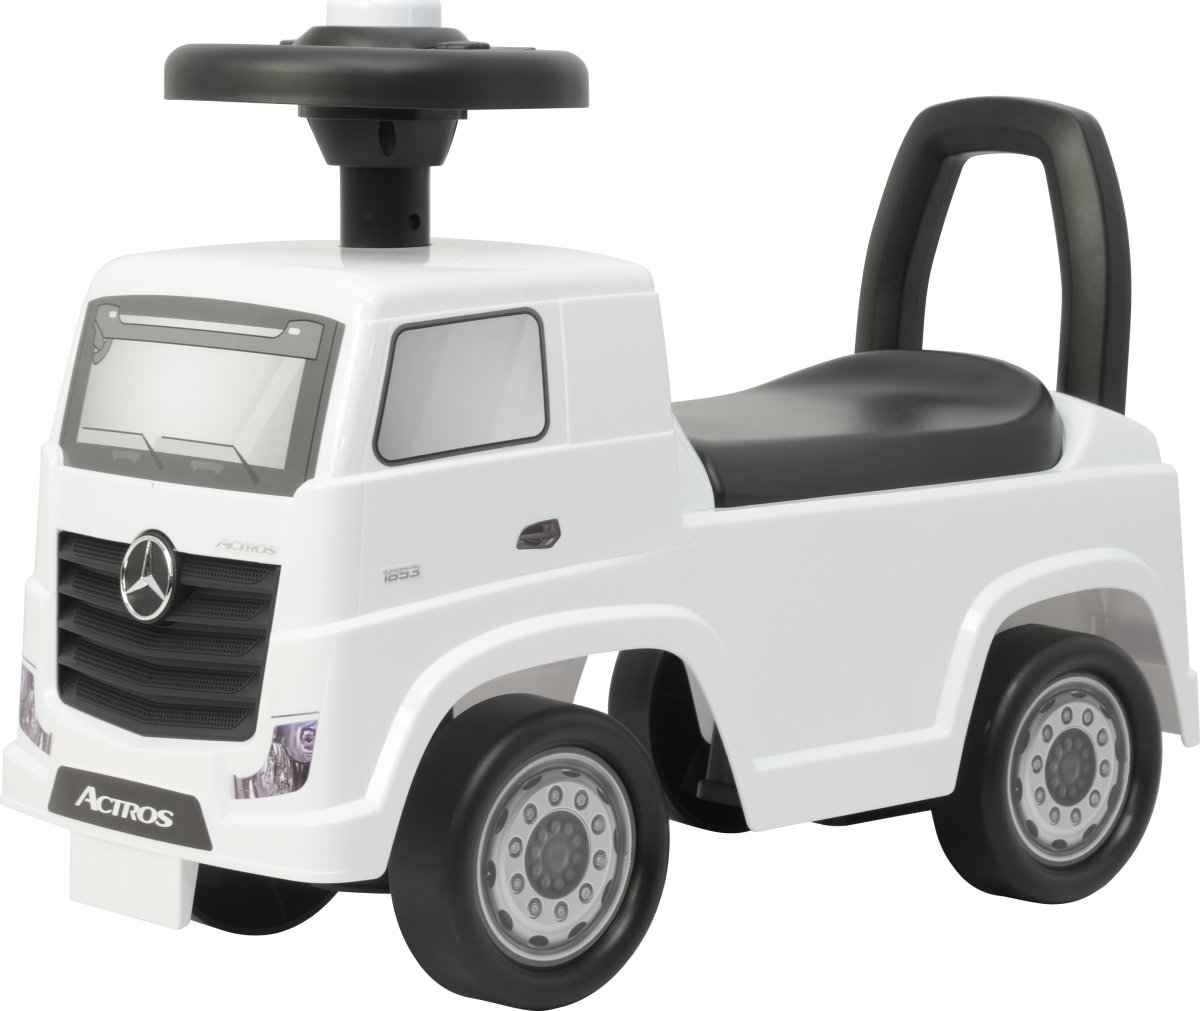 Gåbil Mercedes Actros lastbil til børn, hvid